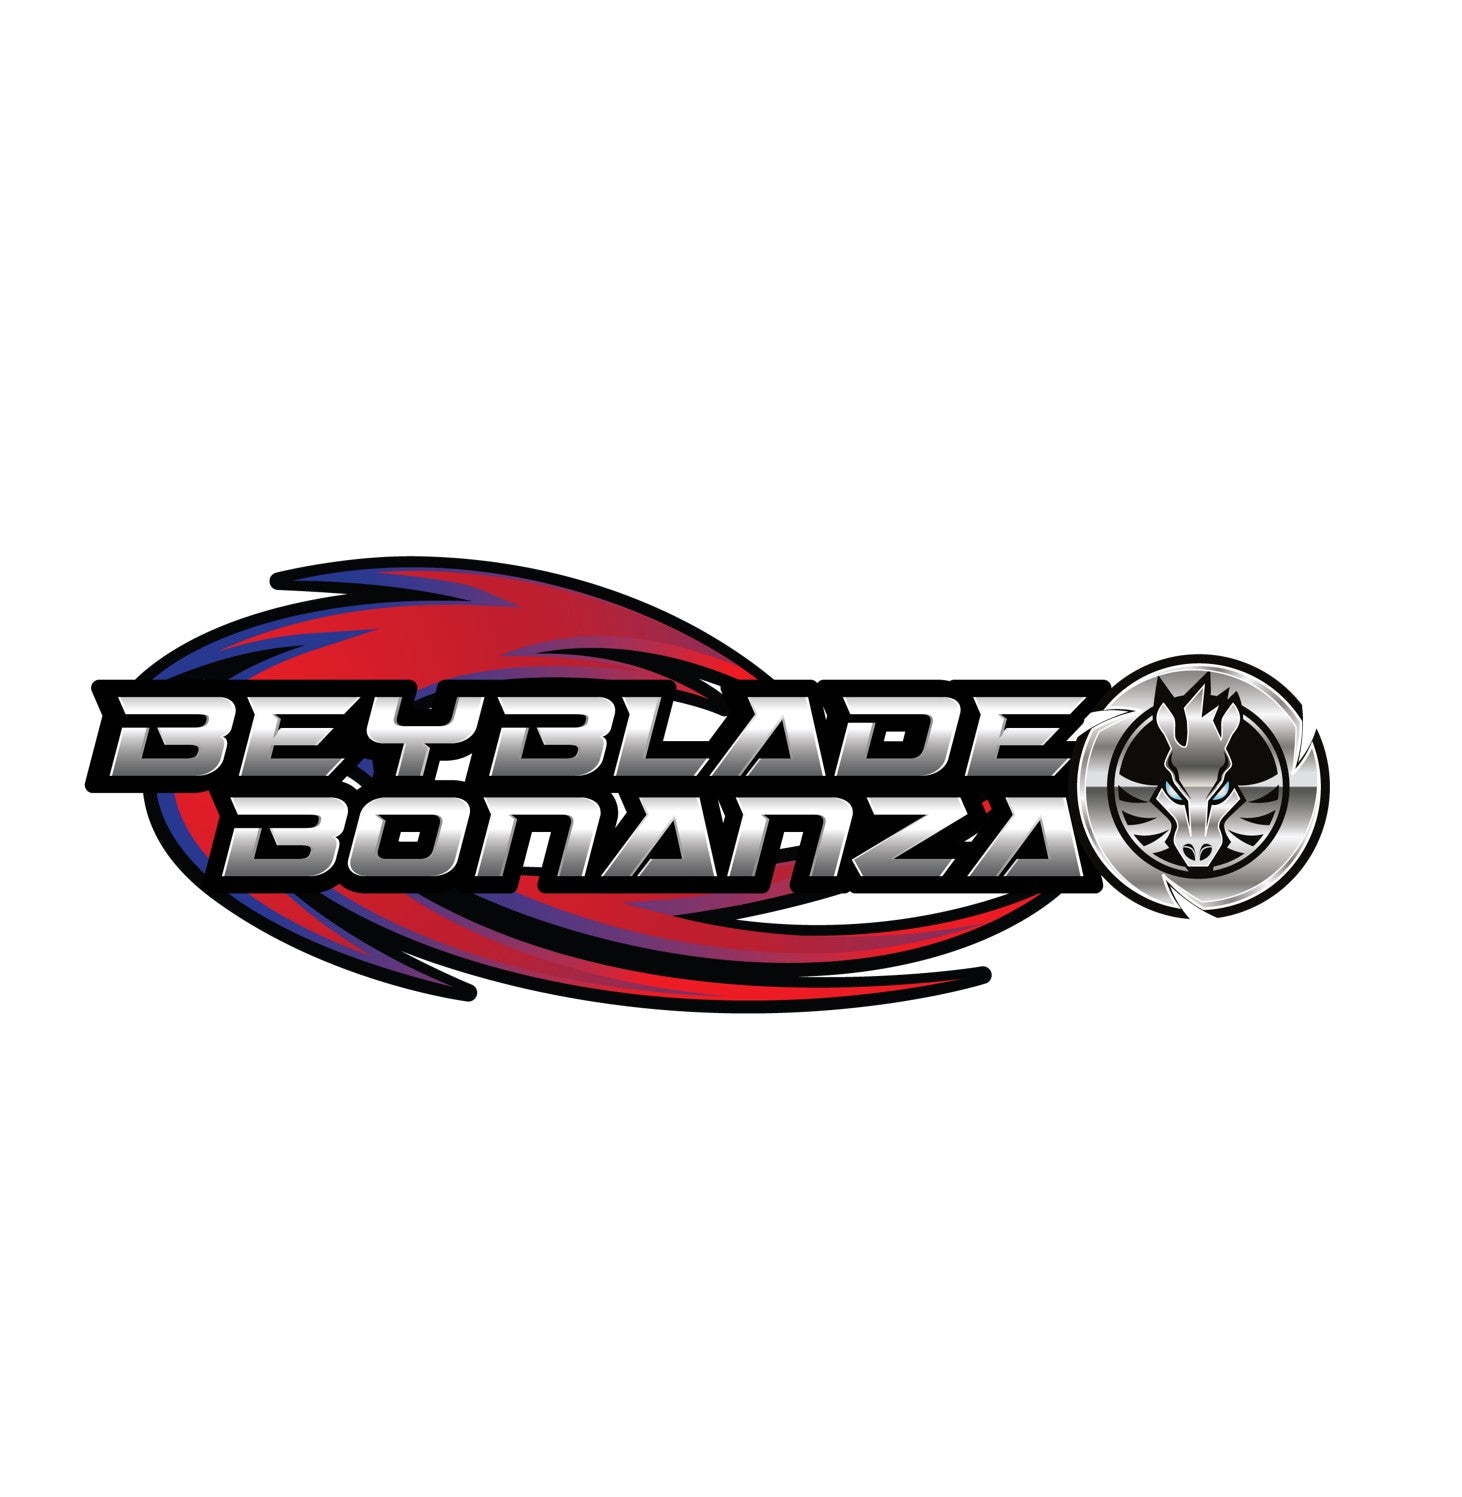 Beyblade Bonanza LLC